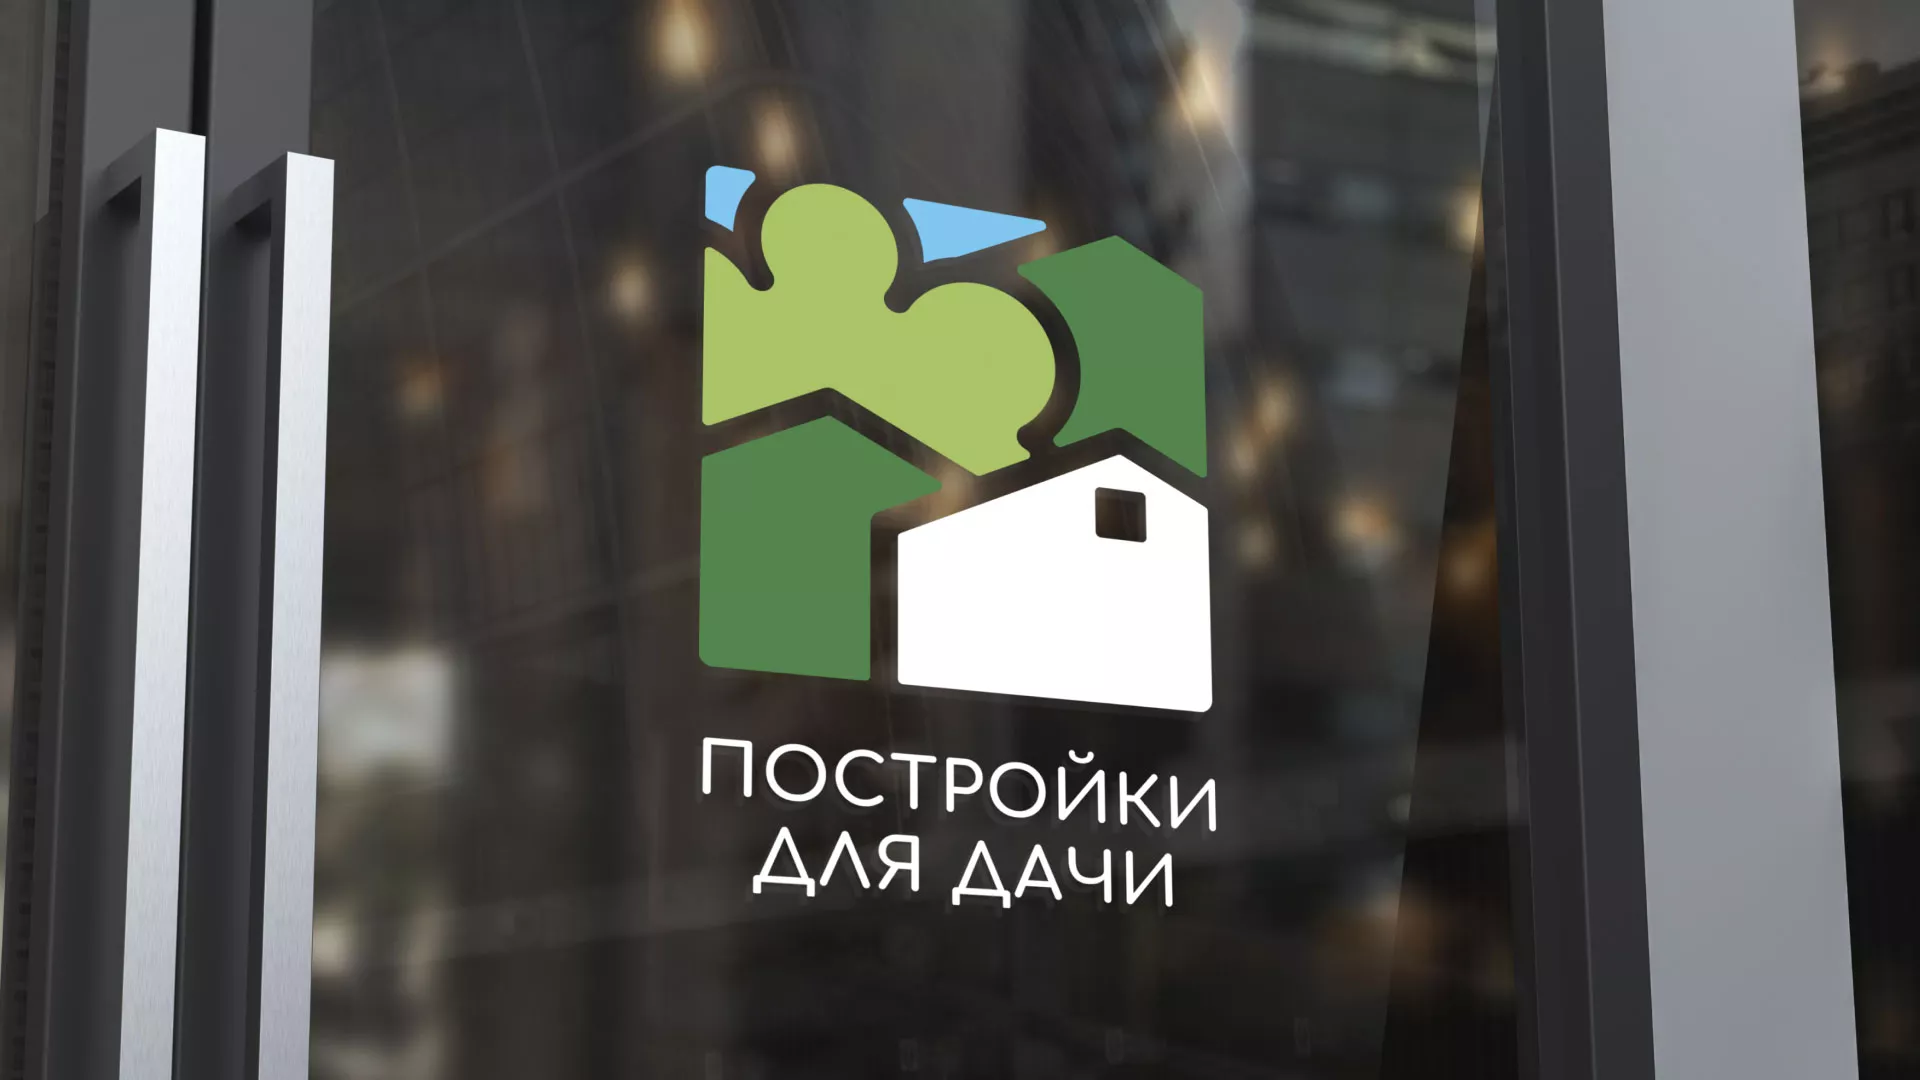 Разработка логотипа в Первомайске для компании «Постройки для дачи»